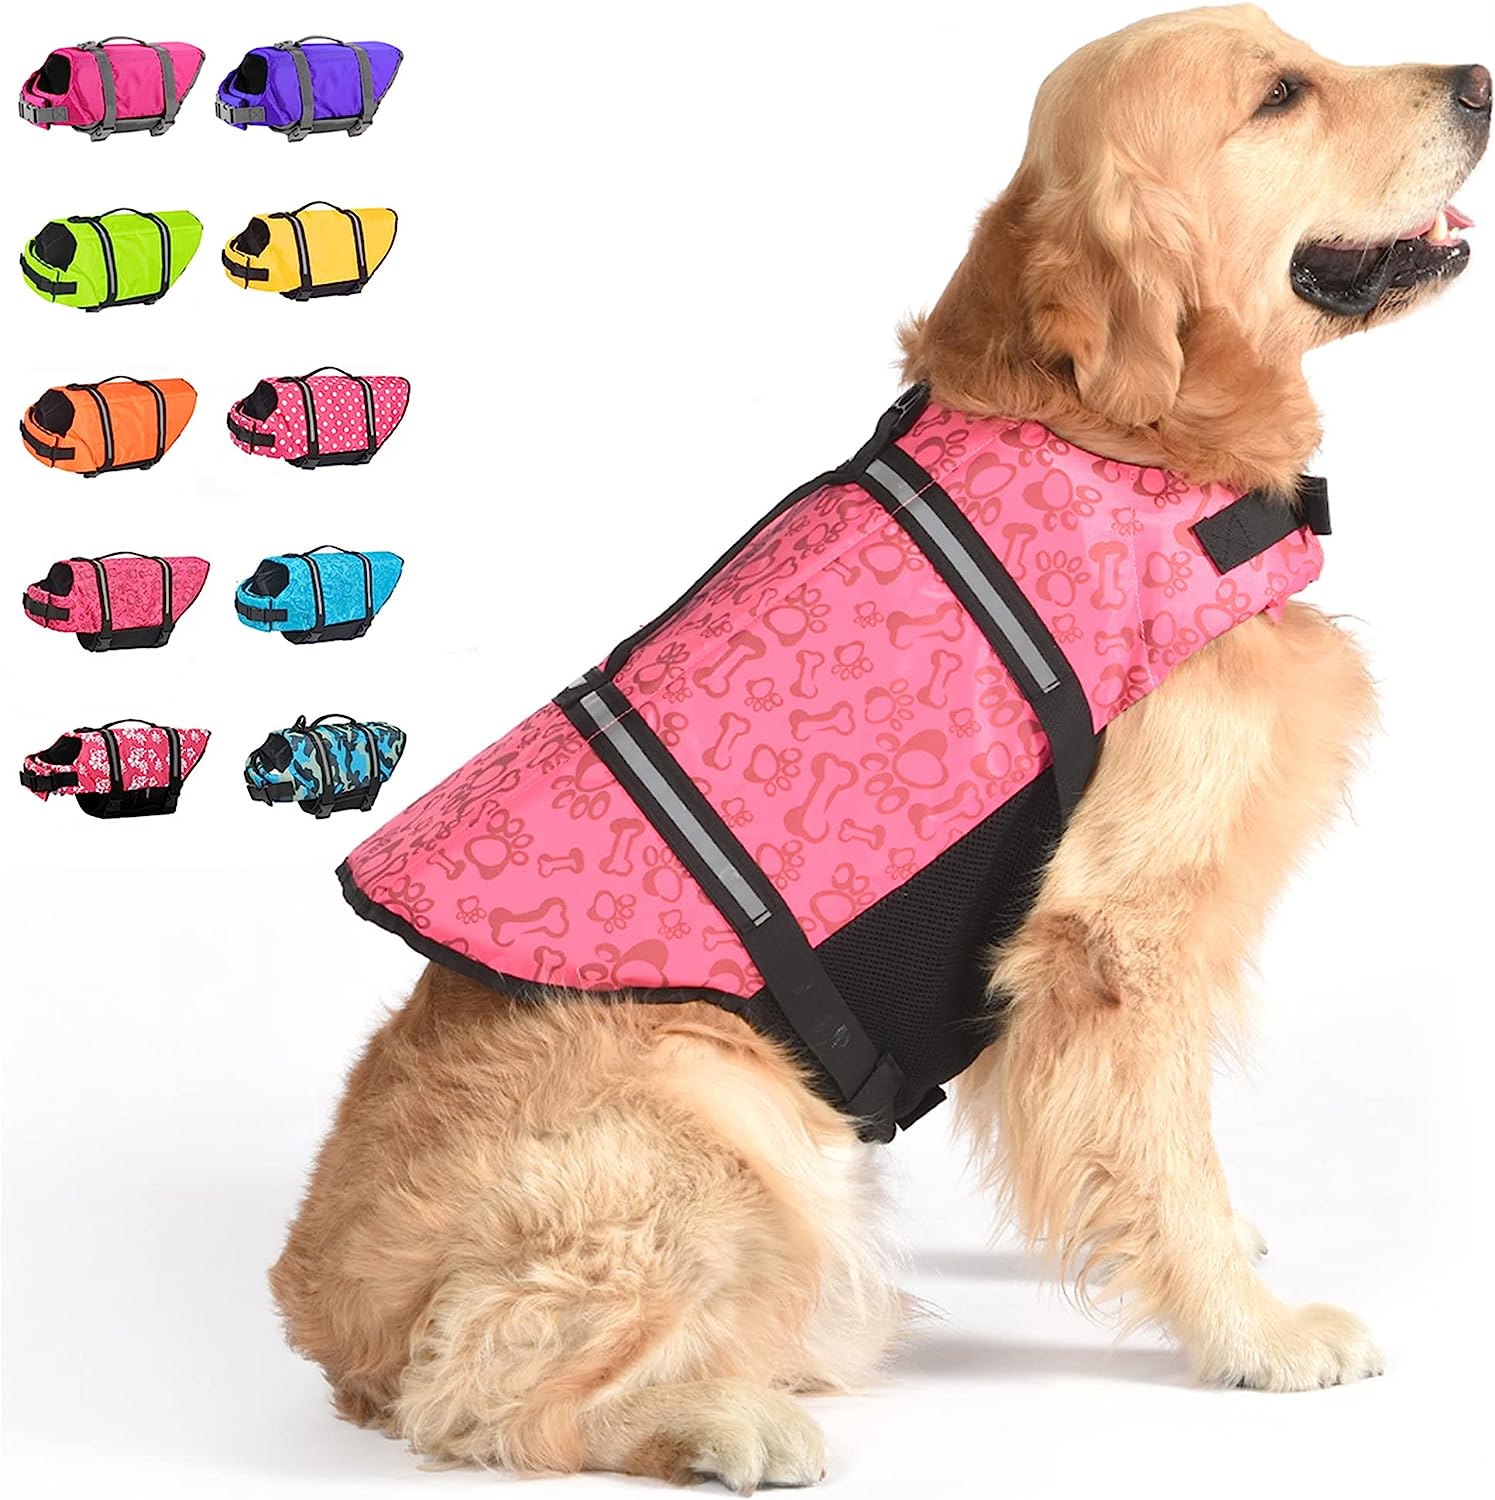 Nchekwa Swimsuit Safety with Reflective Stripes Dog Life Jacket